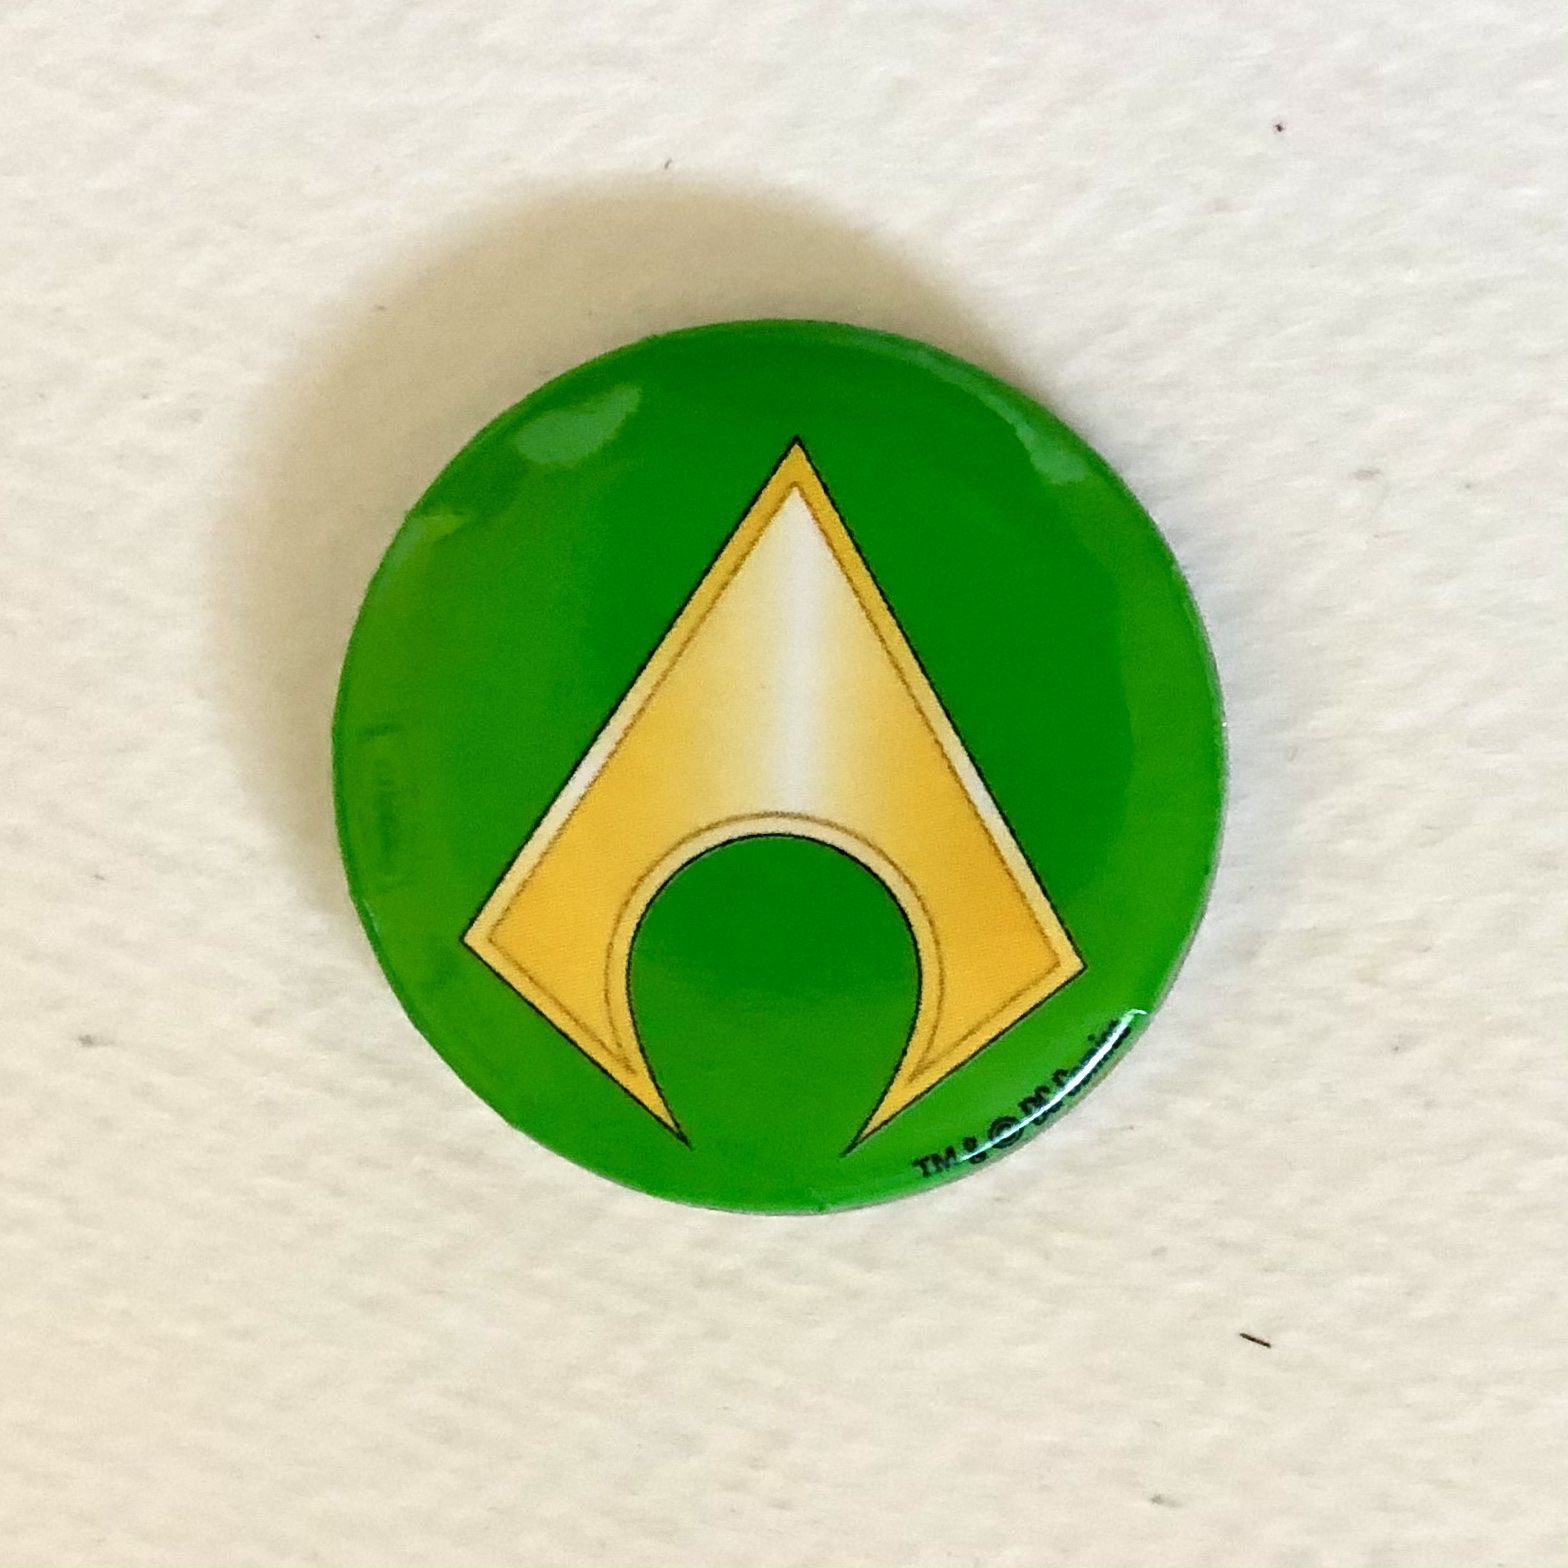 SDCC Aquaman Pin Comic Con 2018 Green & Gold Belt Logo DC Comics